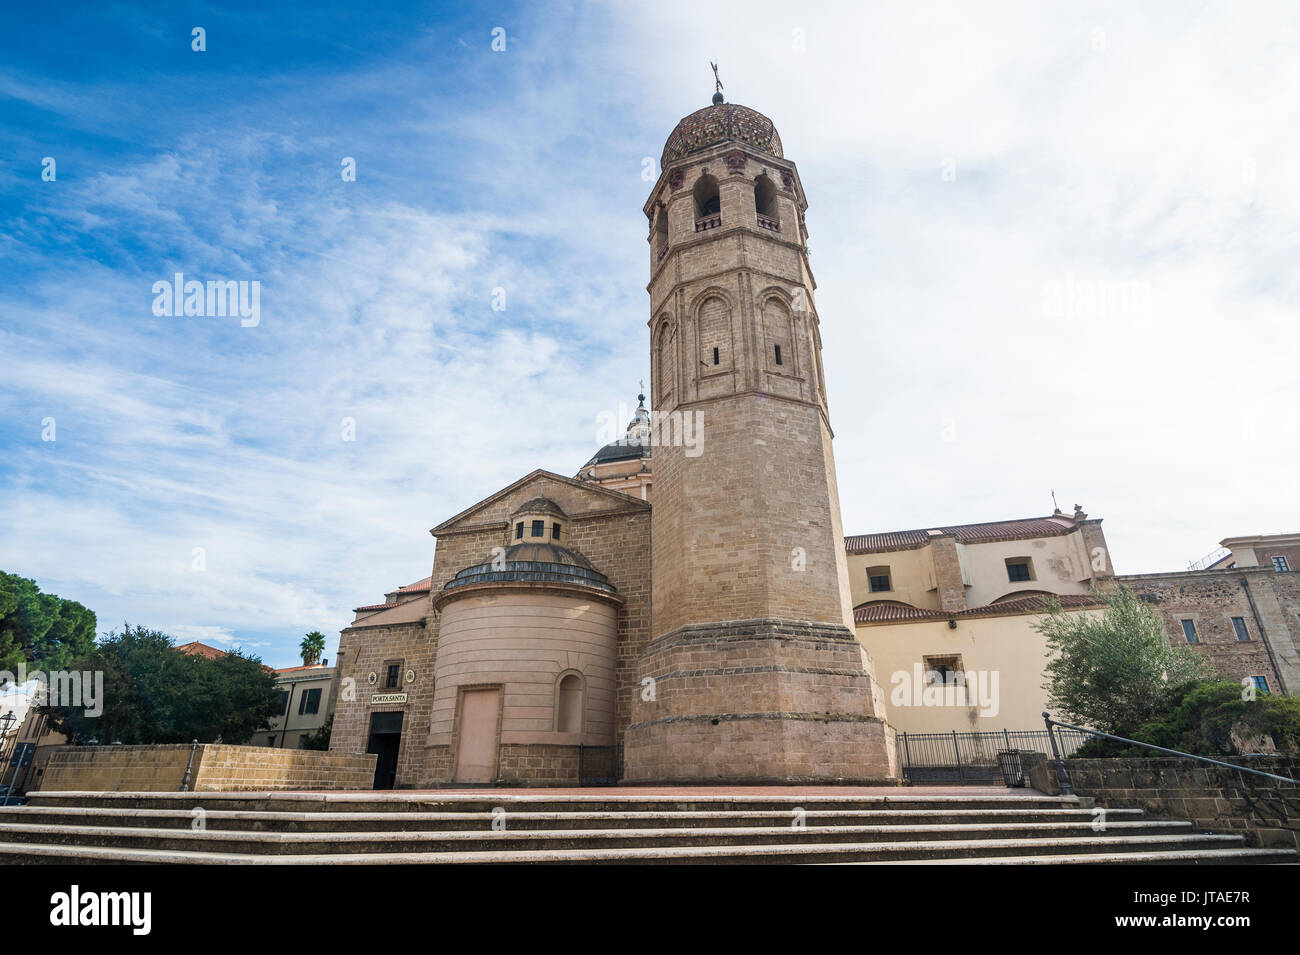 Oristano Cathedral, Oristano, Sardinia, Italy, Europe Stock Photo